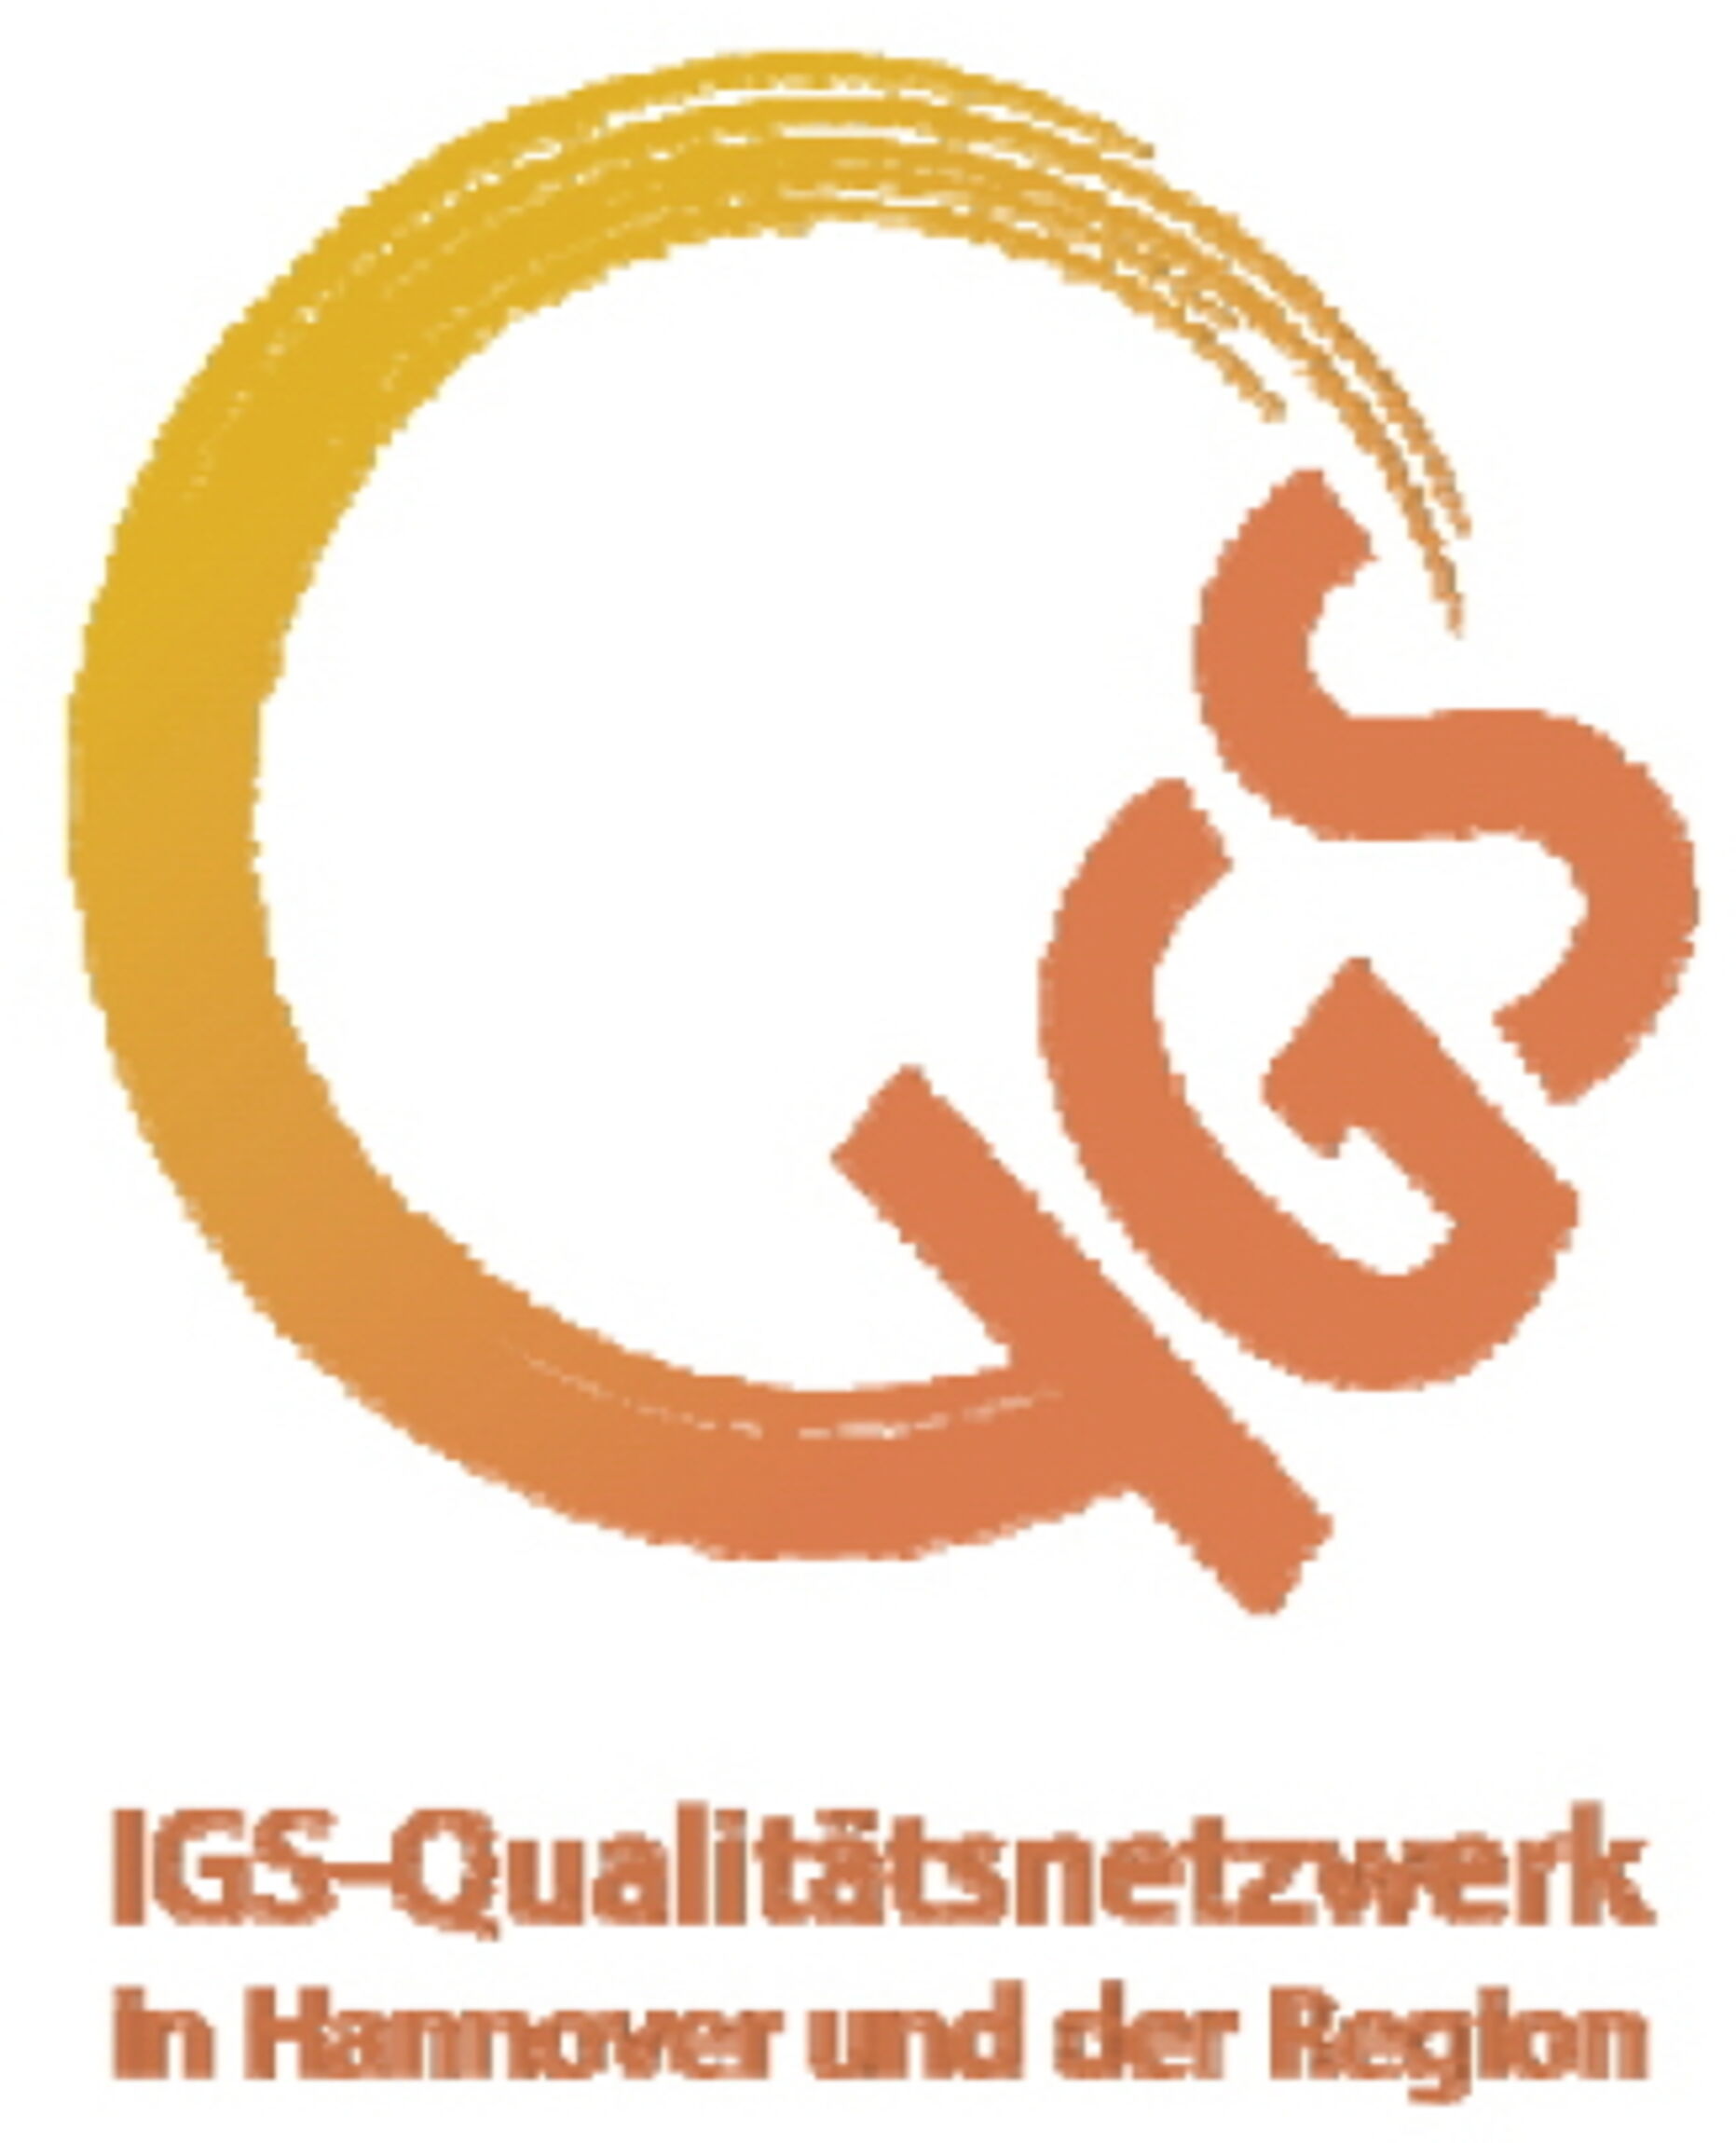 Q-IGS